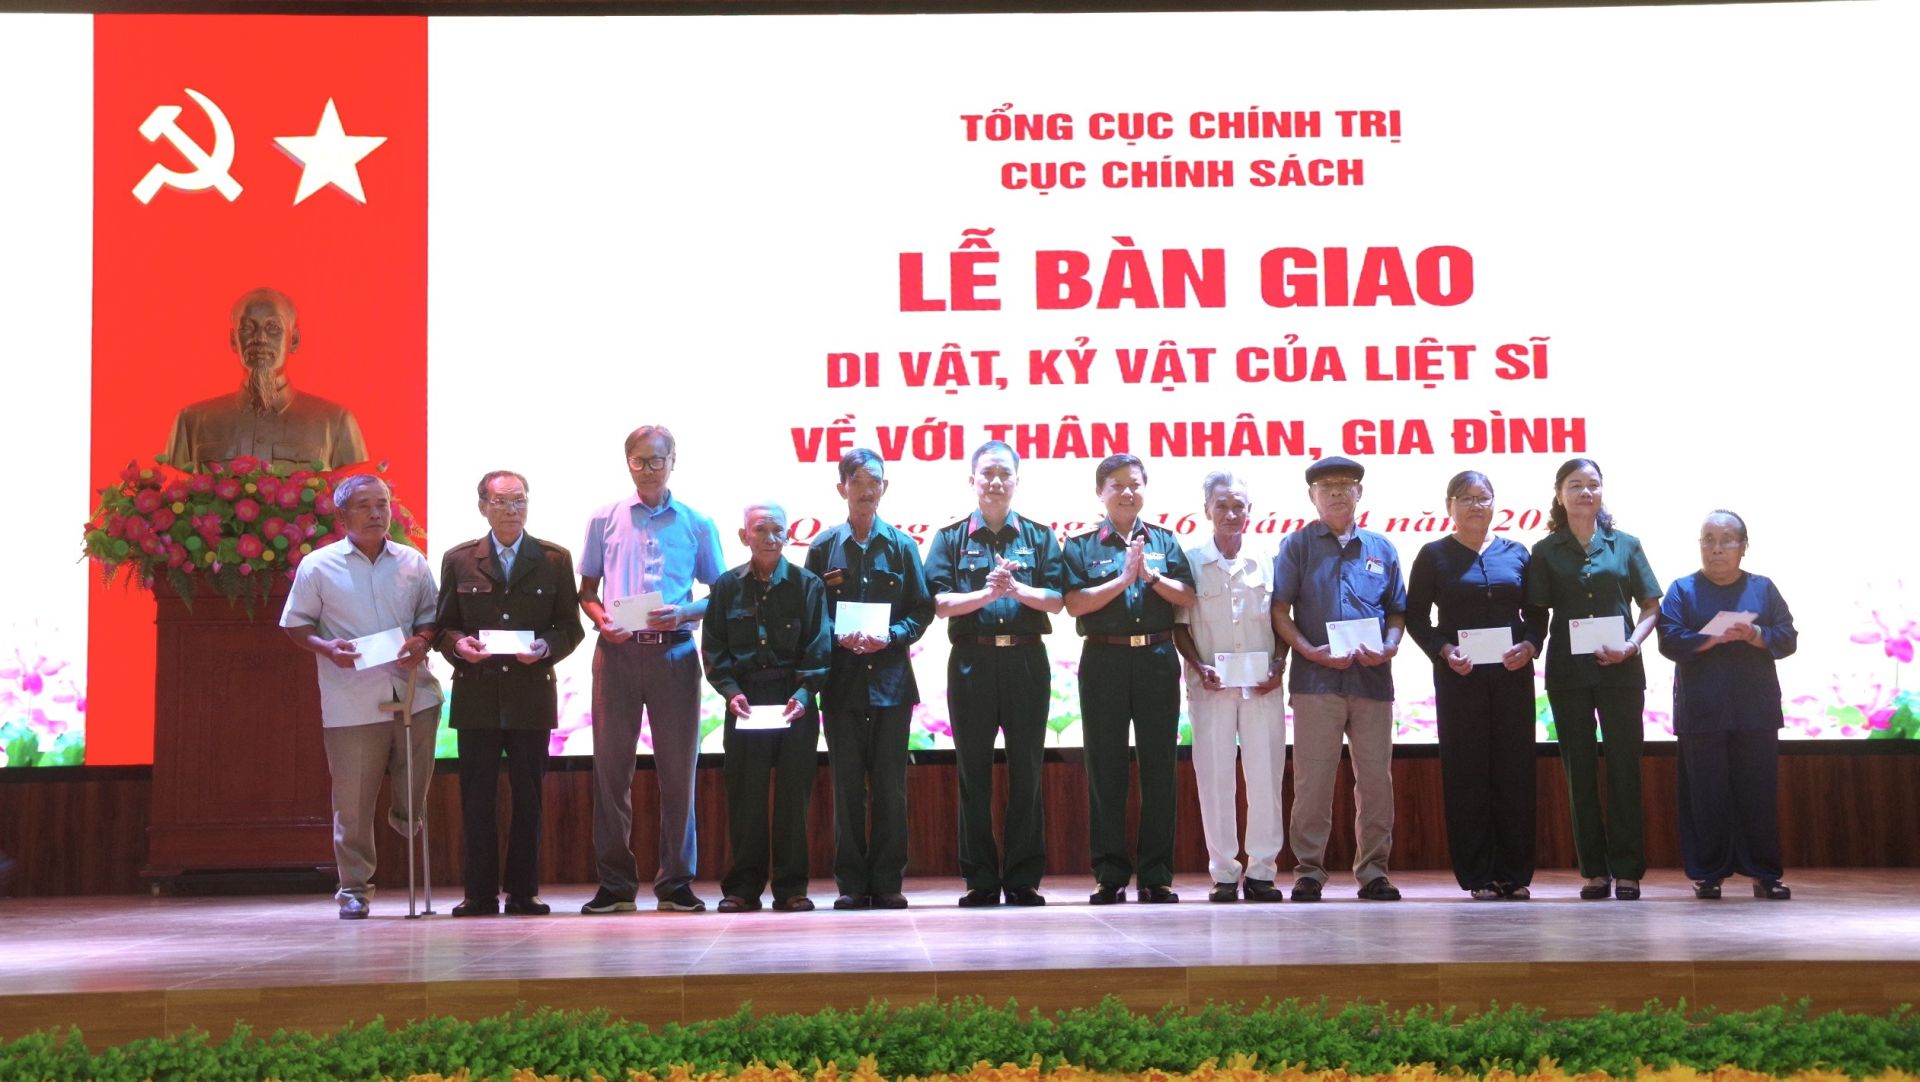 Cục Chính sách Tổng Cục Chính trị tặng quà cho 10 gia đình chính sách, người có công tiêu biểu của hai huyện Cam Lộ và Hải Lăng